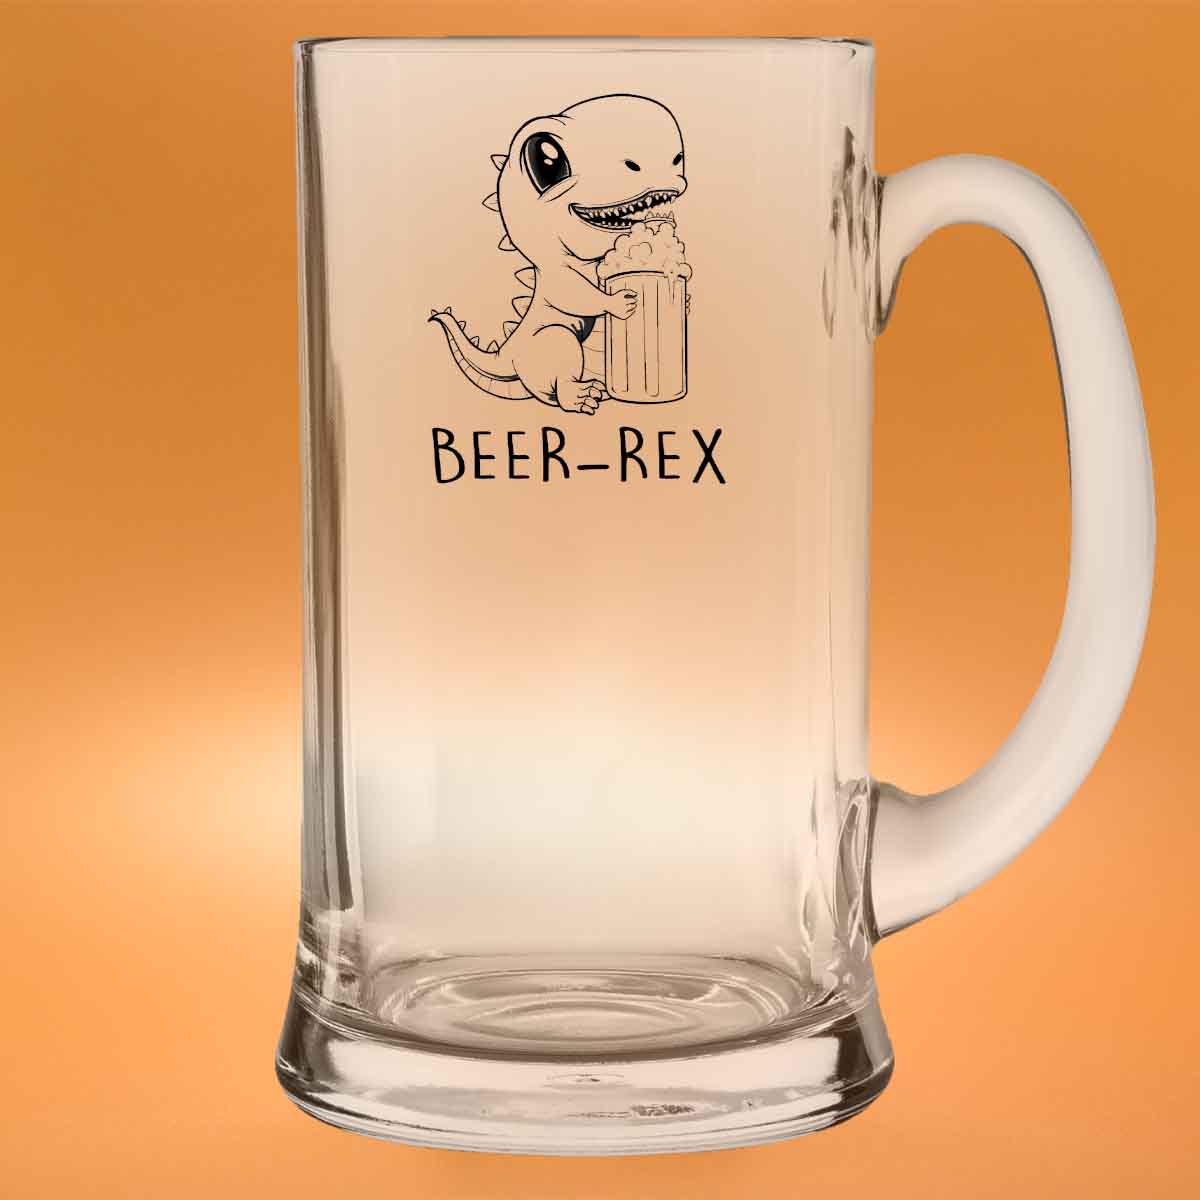 Beer-Rex - Beer glass